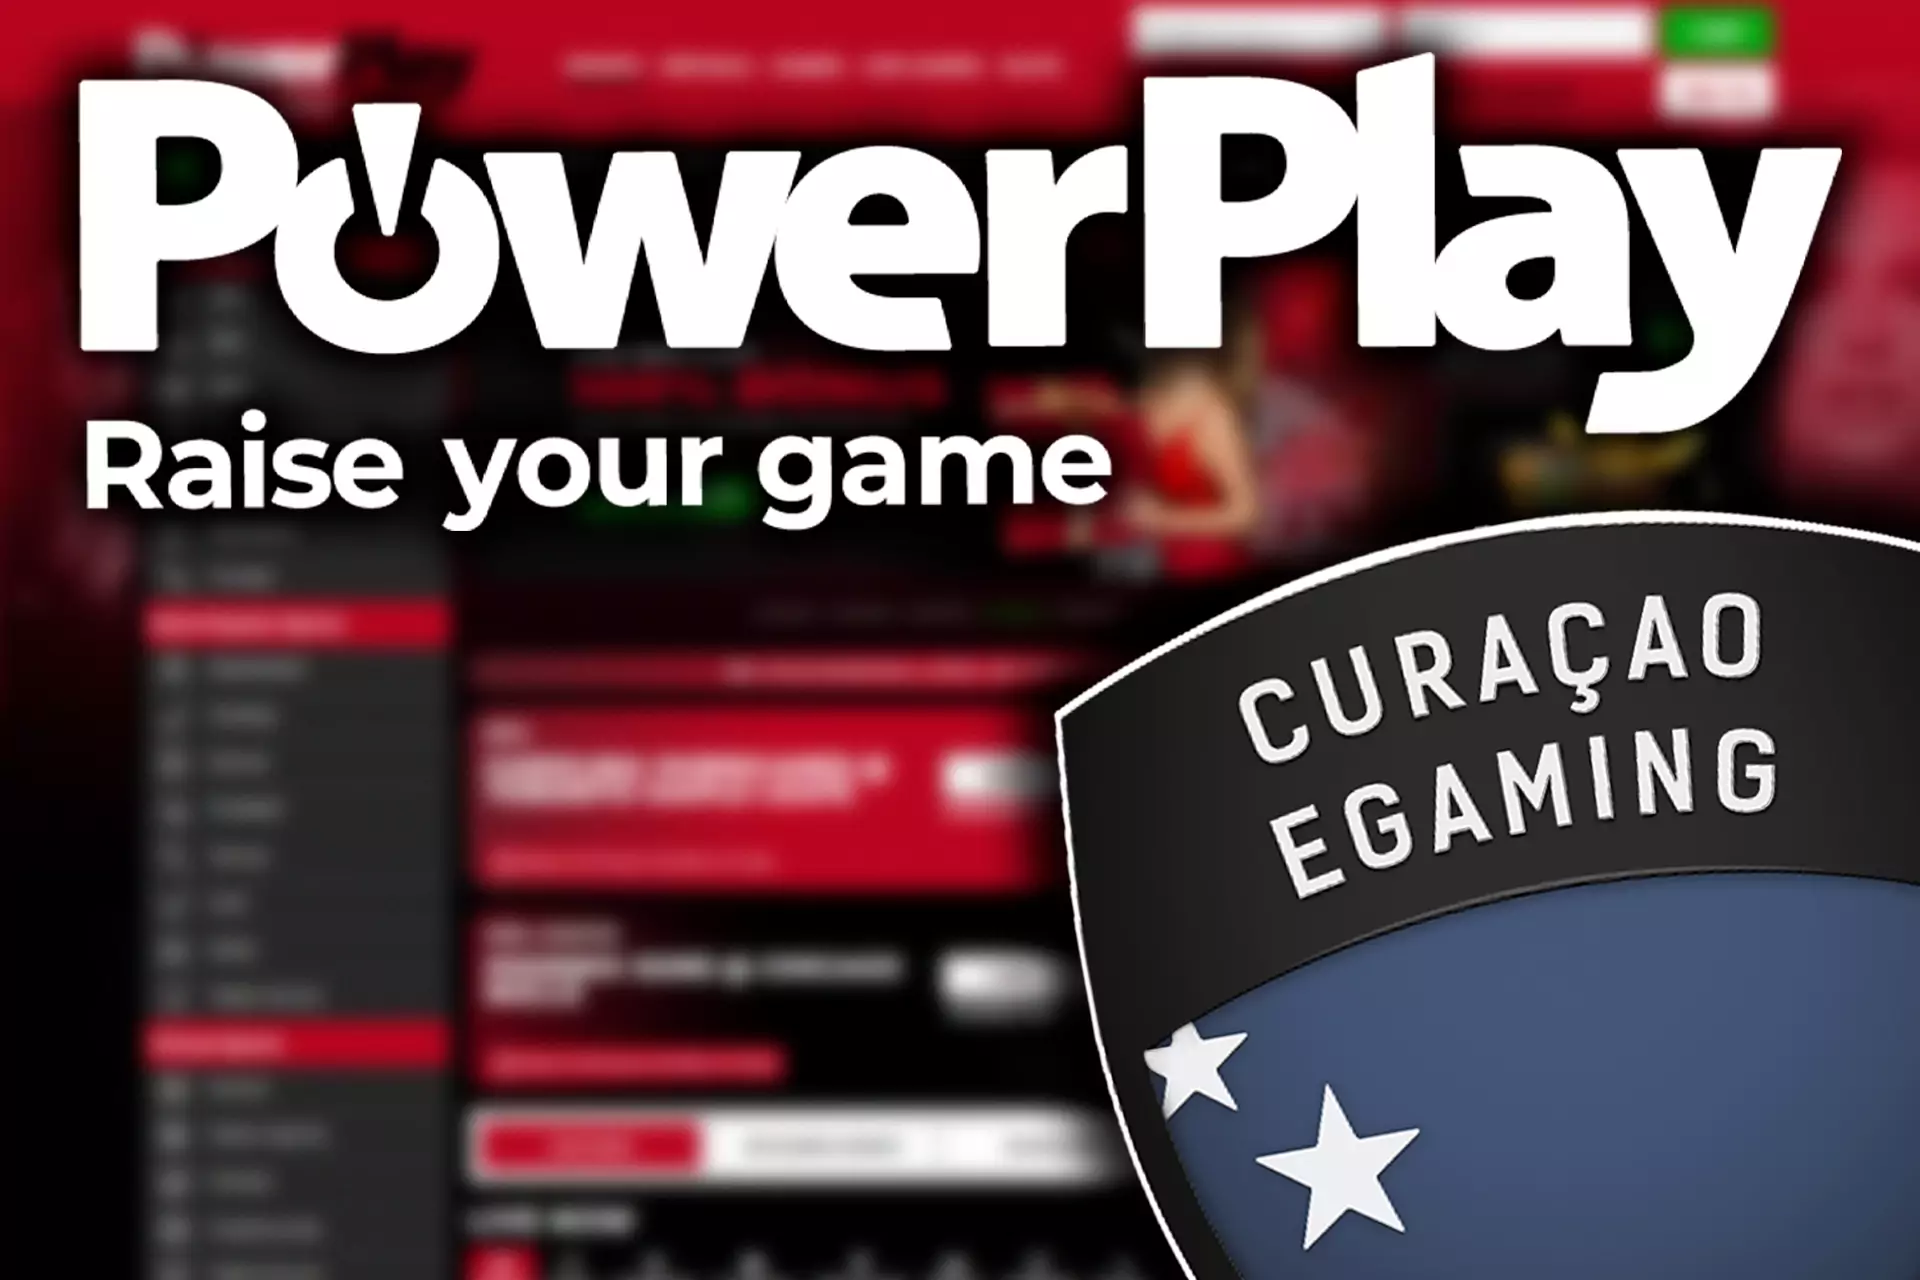 PowerPlay साइट कानूनी और सुरक्षित है क्योंकि इसमें कुराकाओ ई-गेमिंग लाइसेंस है।